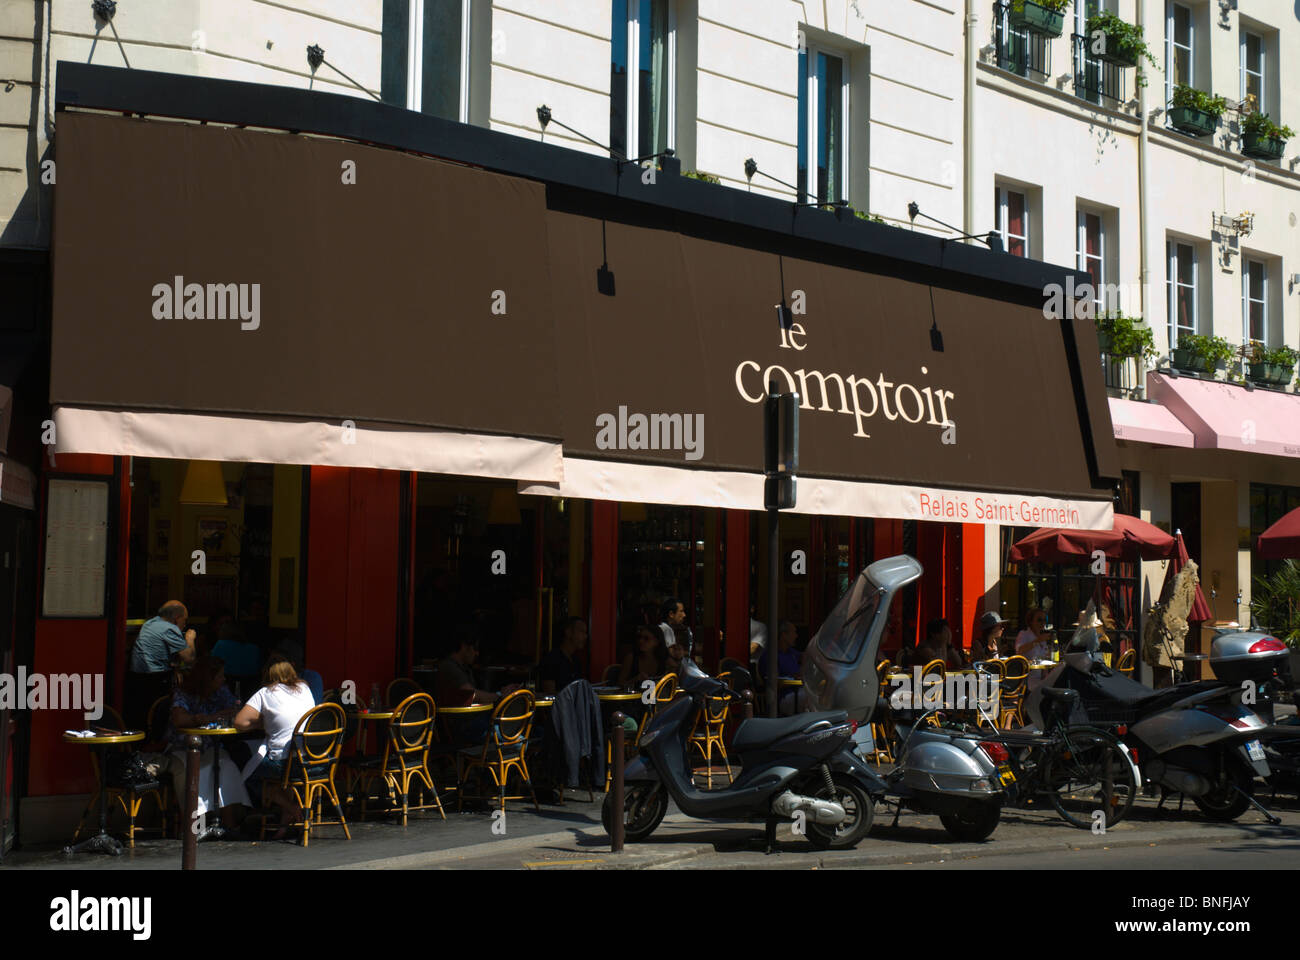 Le Comptoir cafe restaurant bistro exterior St-Germain-des-Pres Paris ...